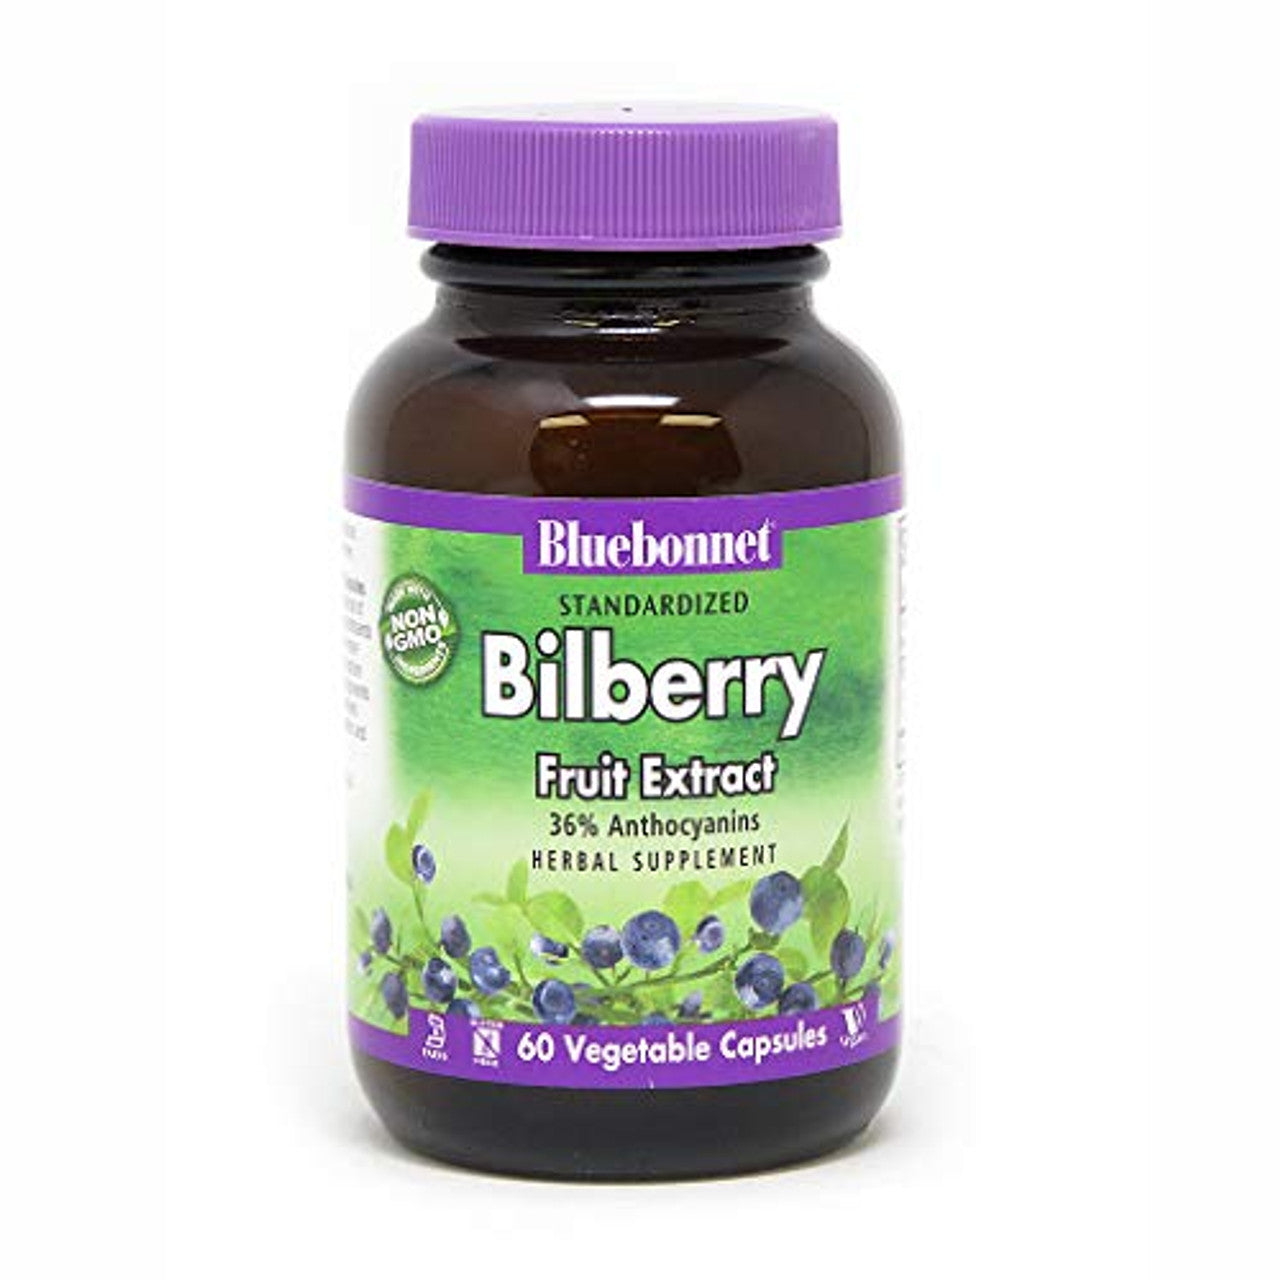 Bluebonnet Bilberry Fruit Extract Supplement